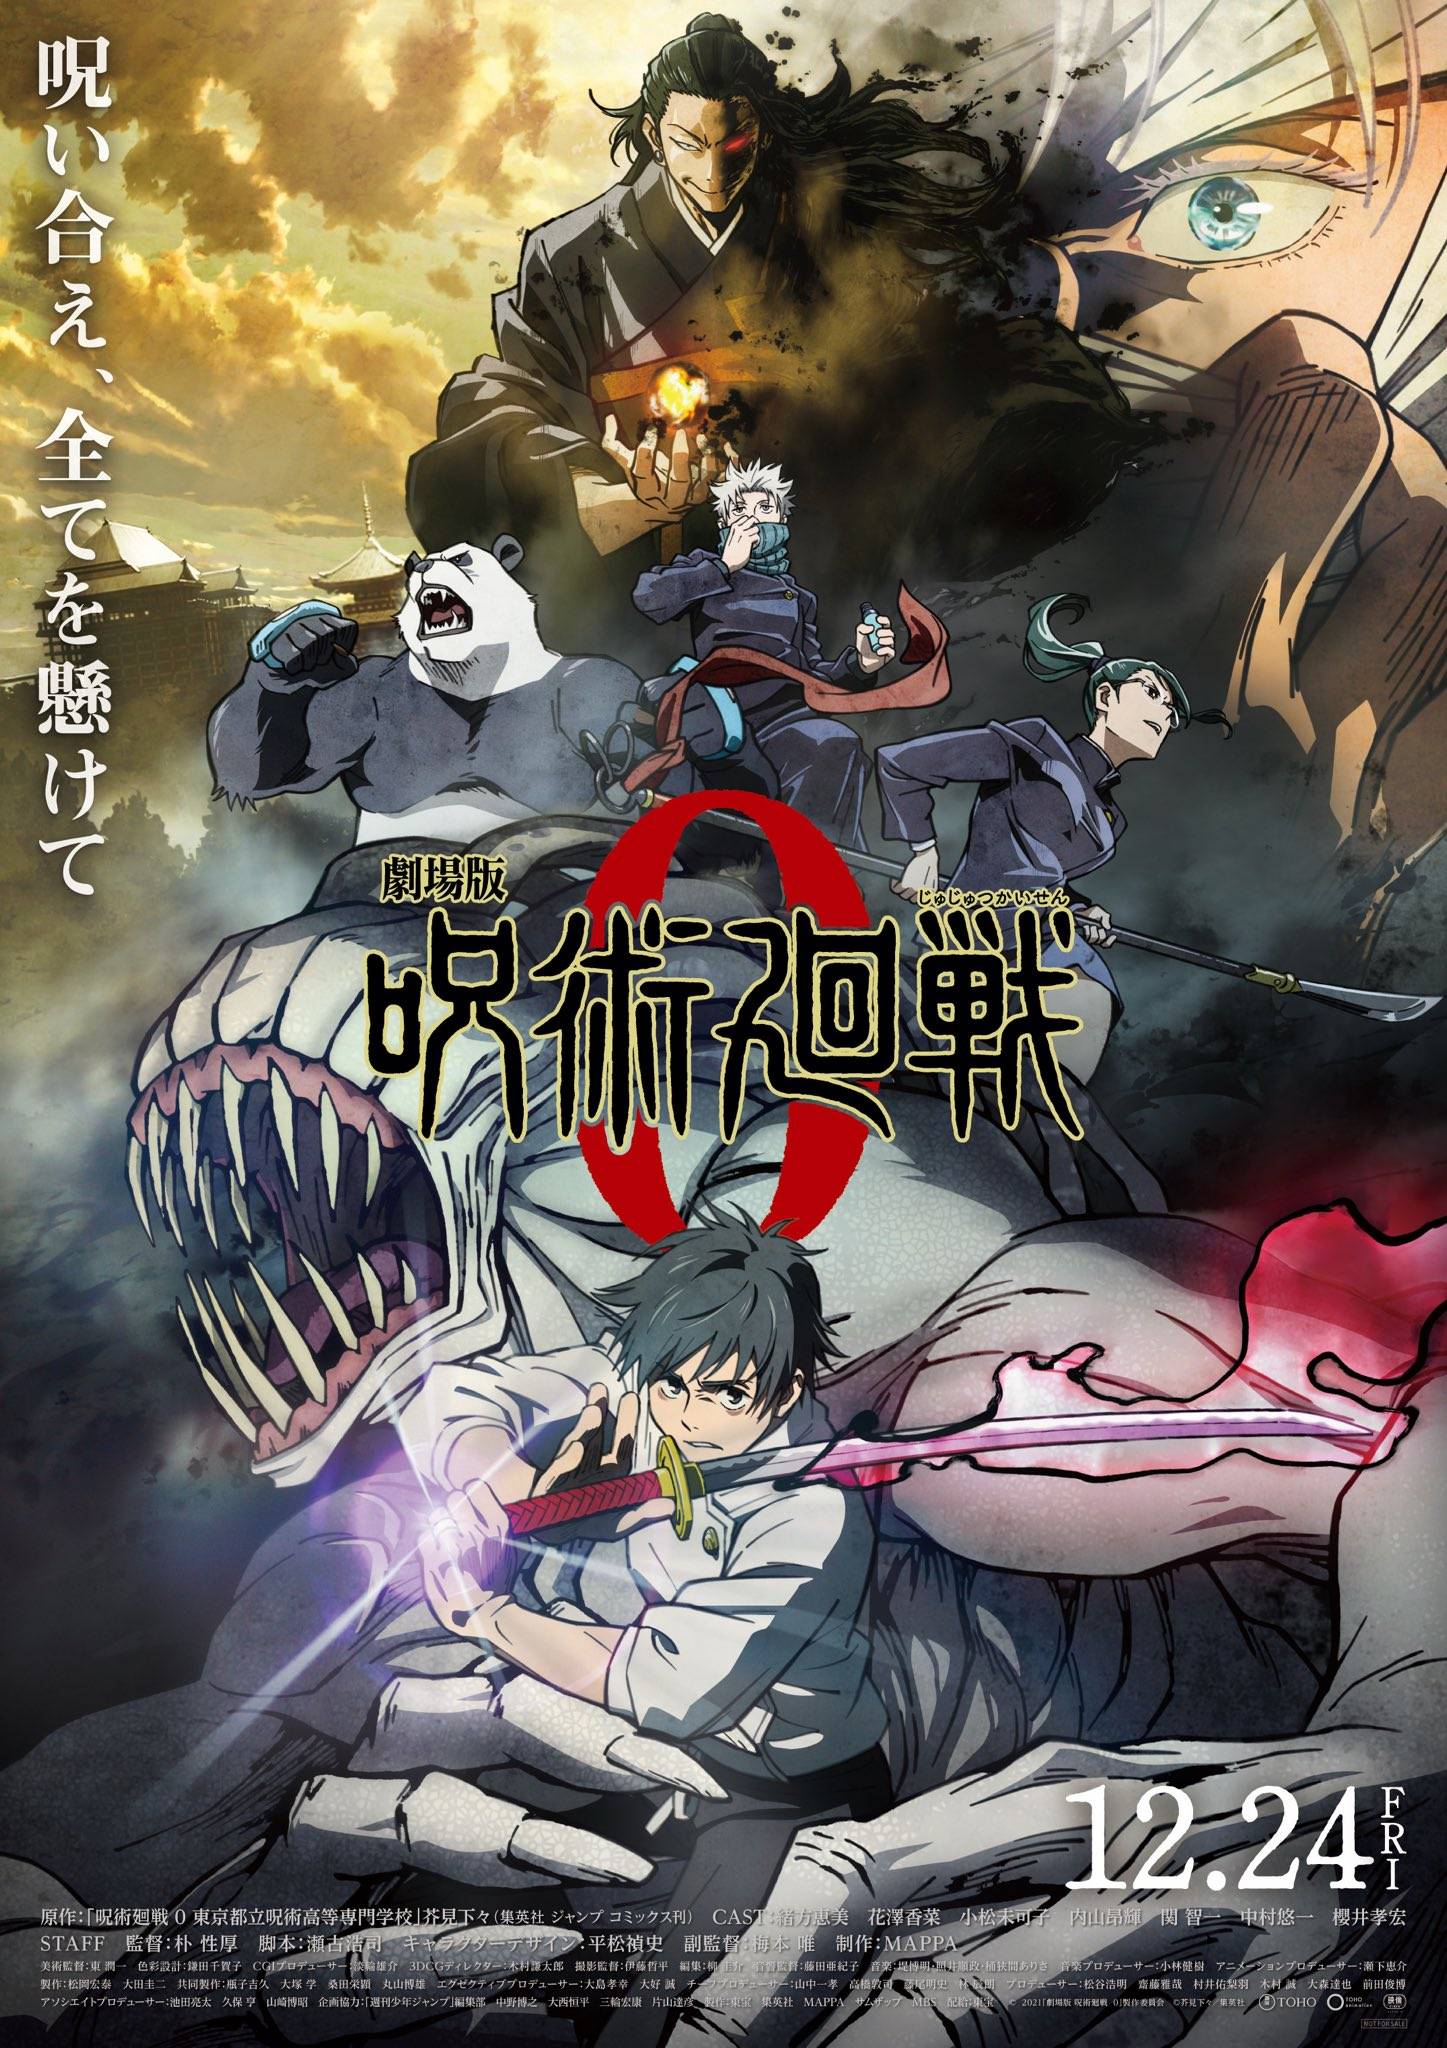 原创动画电影《咒术回战0》公开最新角色海报,12月24日燃情上映